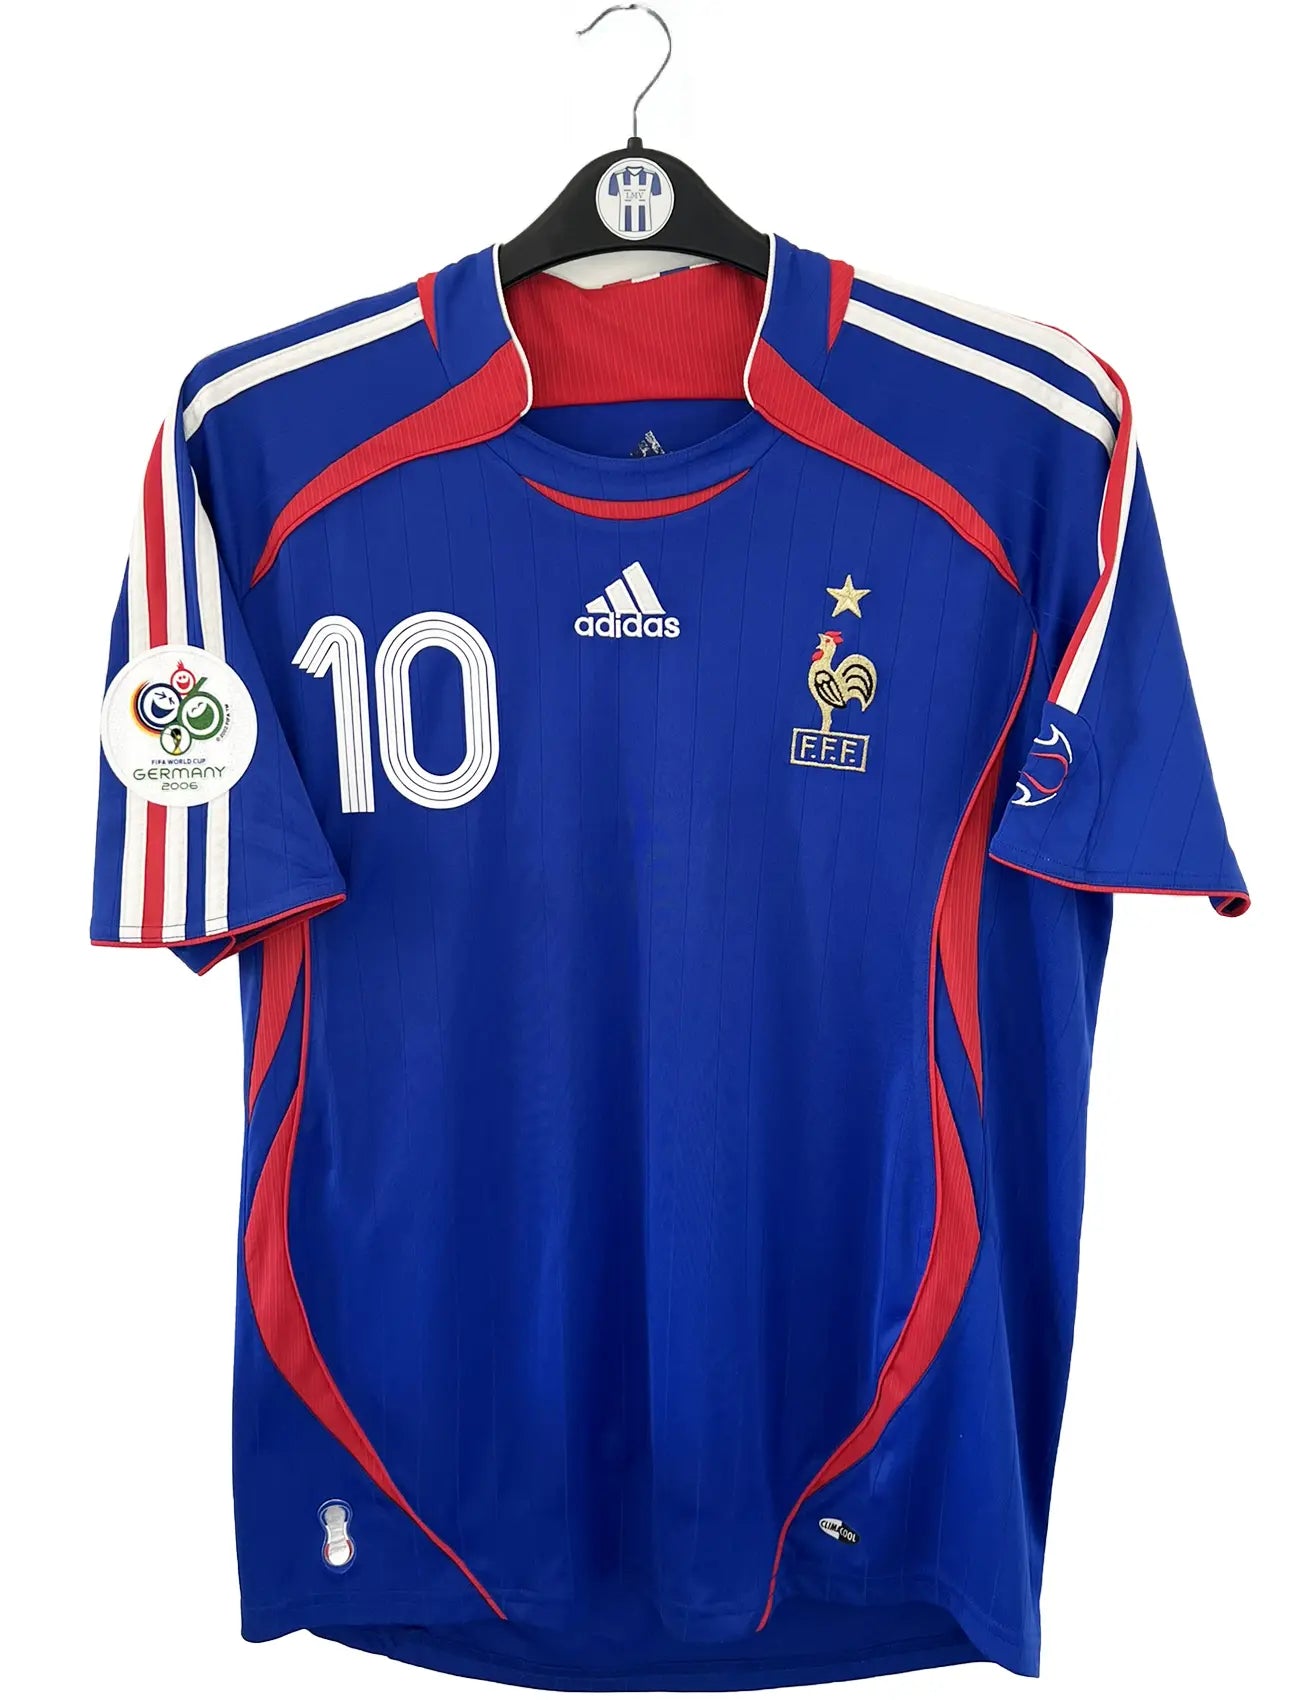 Maillot de foot vintage domicile bleu, blanc et rouge de l'équipe de france 2006. On peut retrouver l'équipementier adidas. Le maillot est floqué du numéro 10 Zinedine Zidane. Il s'agit d'un maillot authentique d'époque comportant l'étiquette 740126